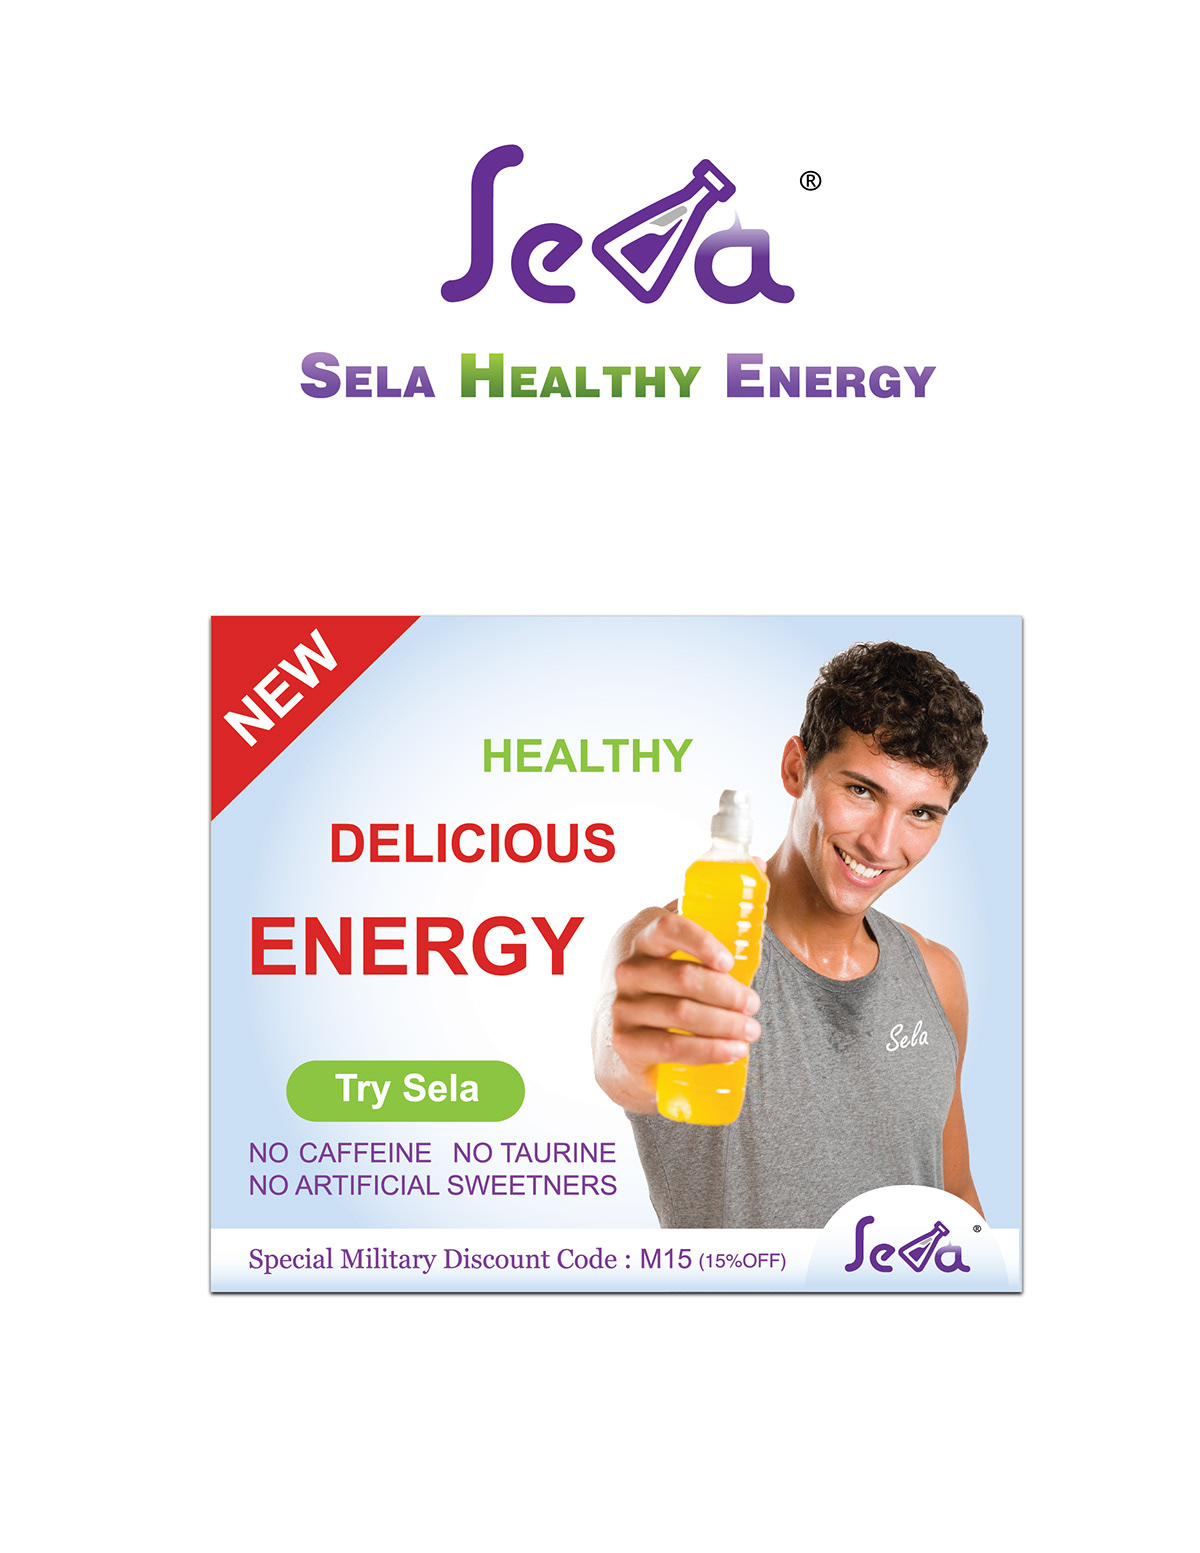 SELA HEALTHY ENERGY